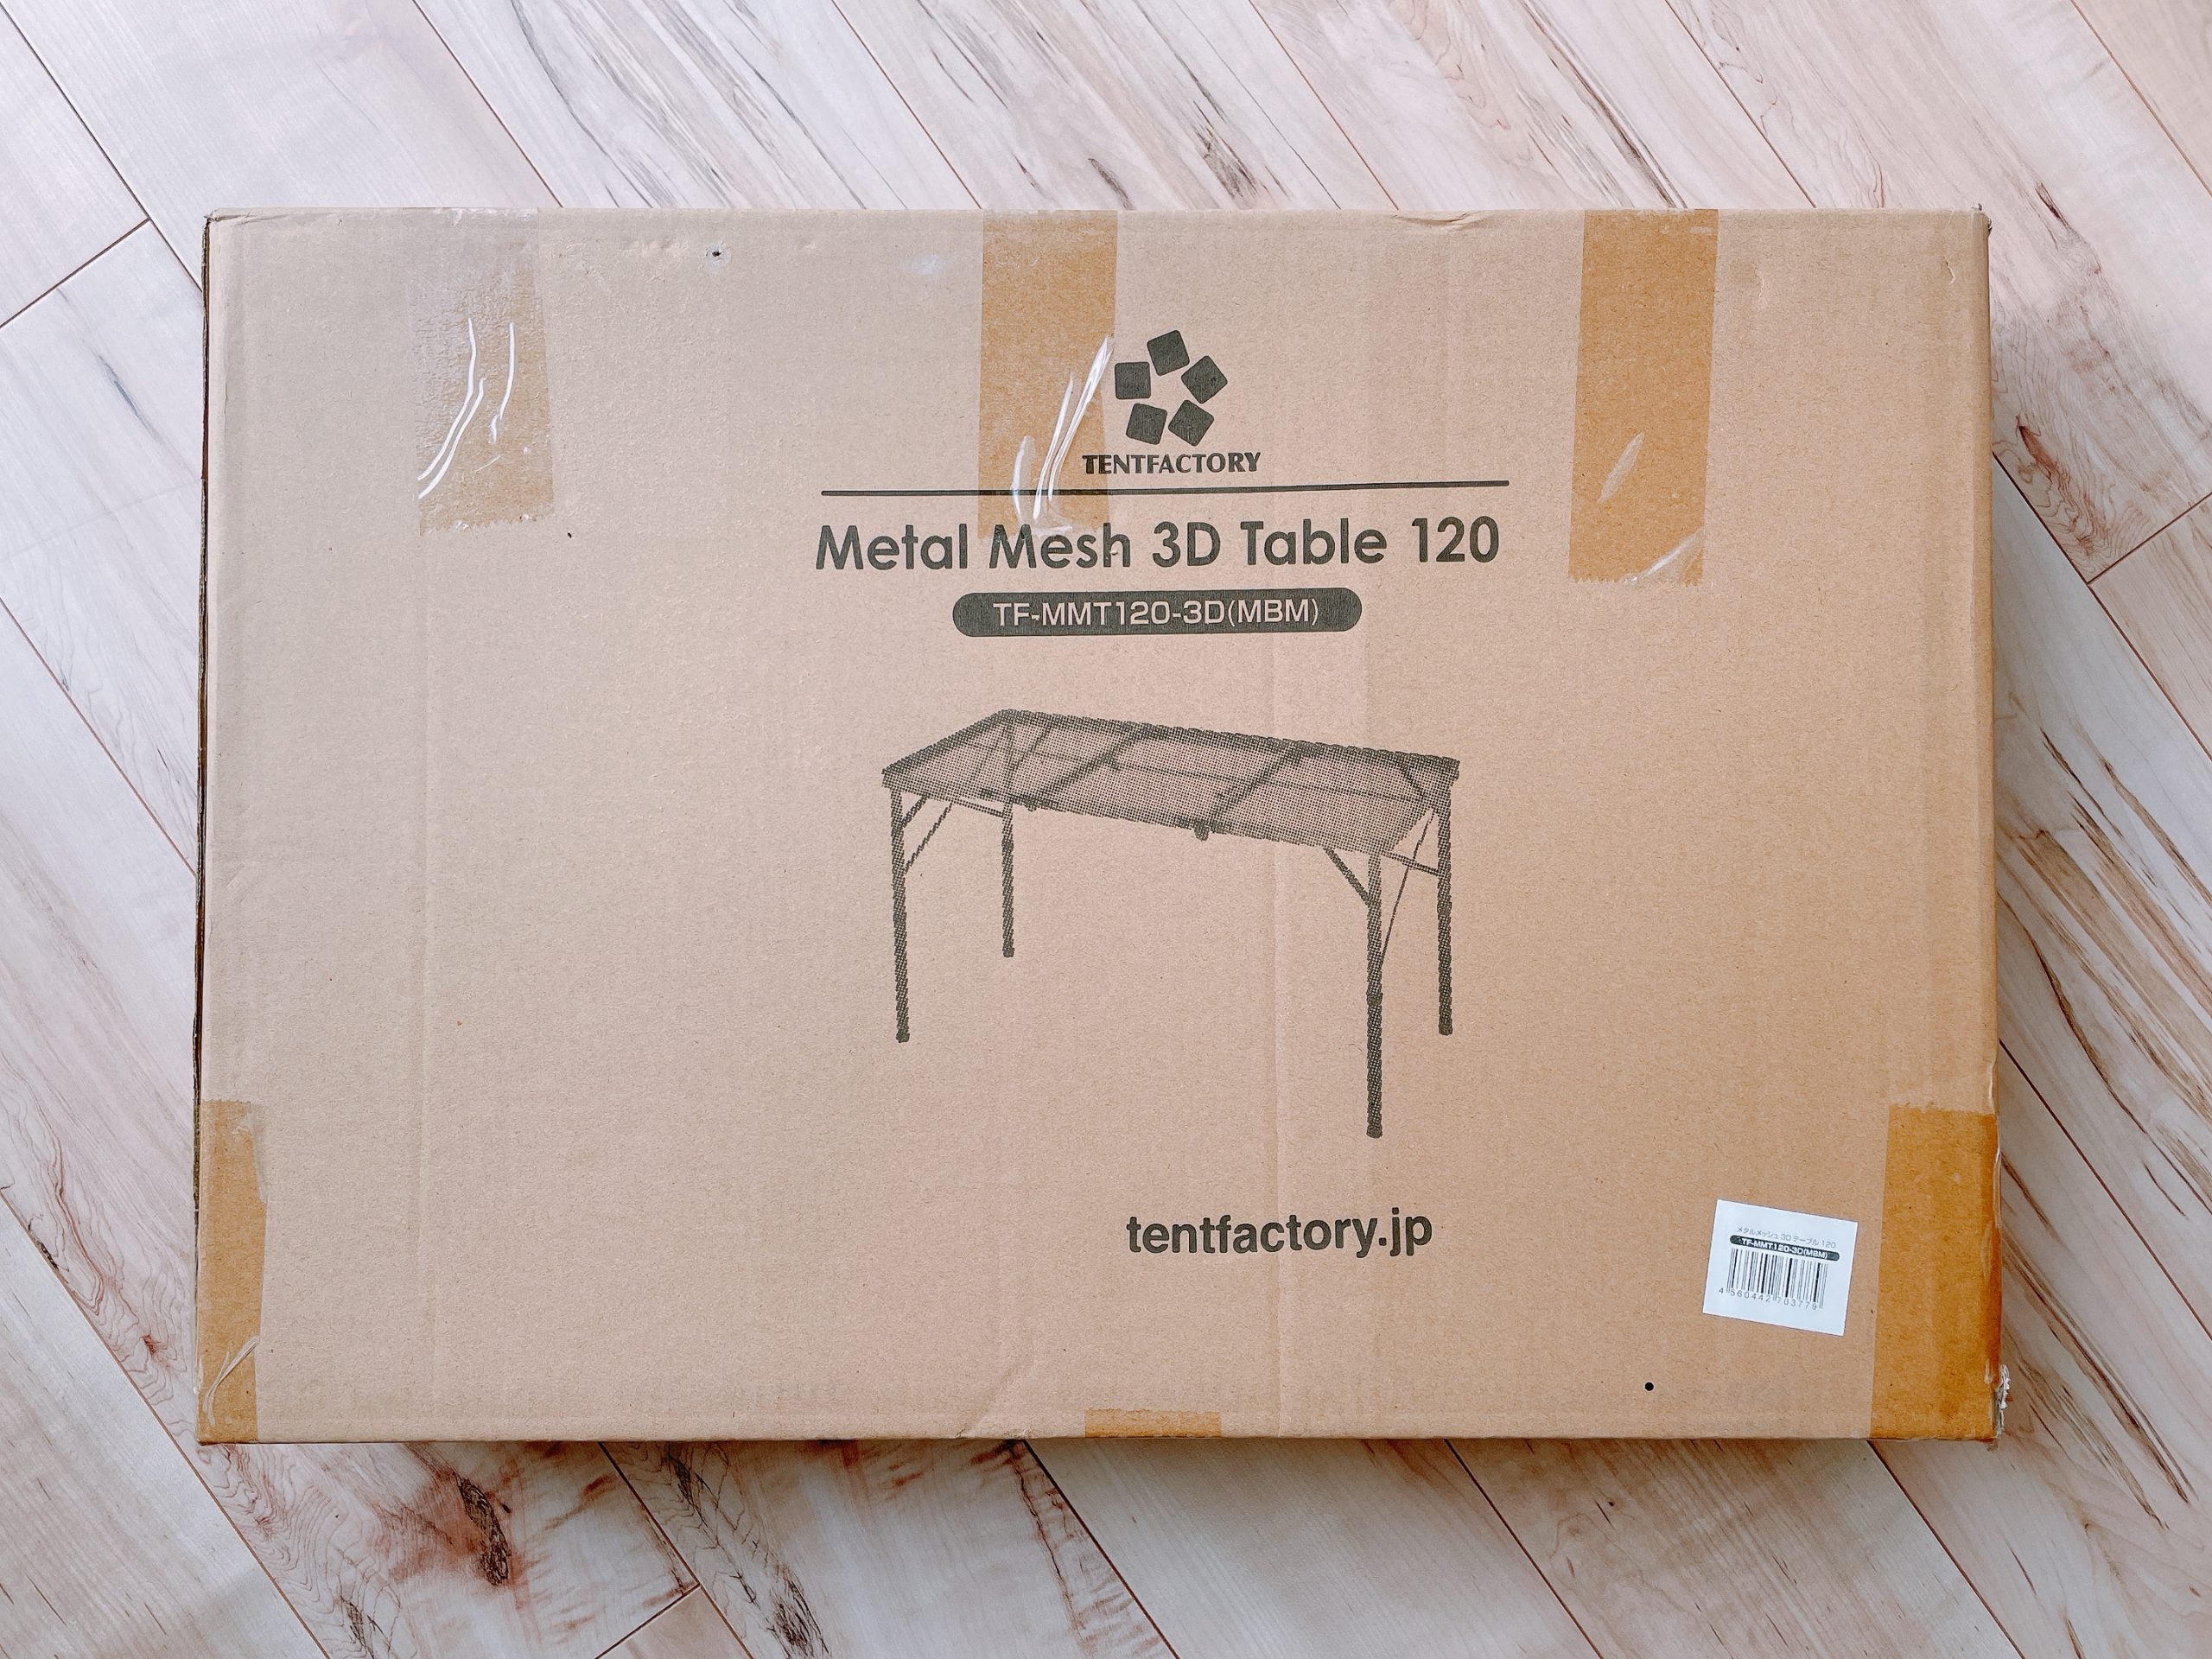 テントファクトリー メタルメッシュテーブル3Dテーブル120の箱